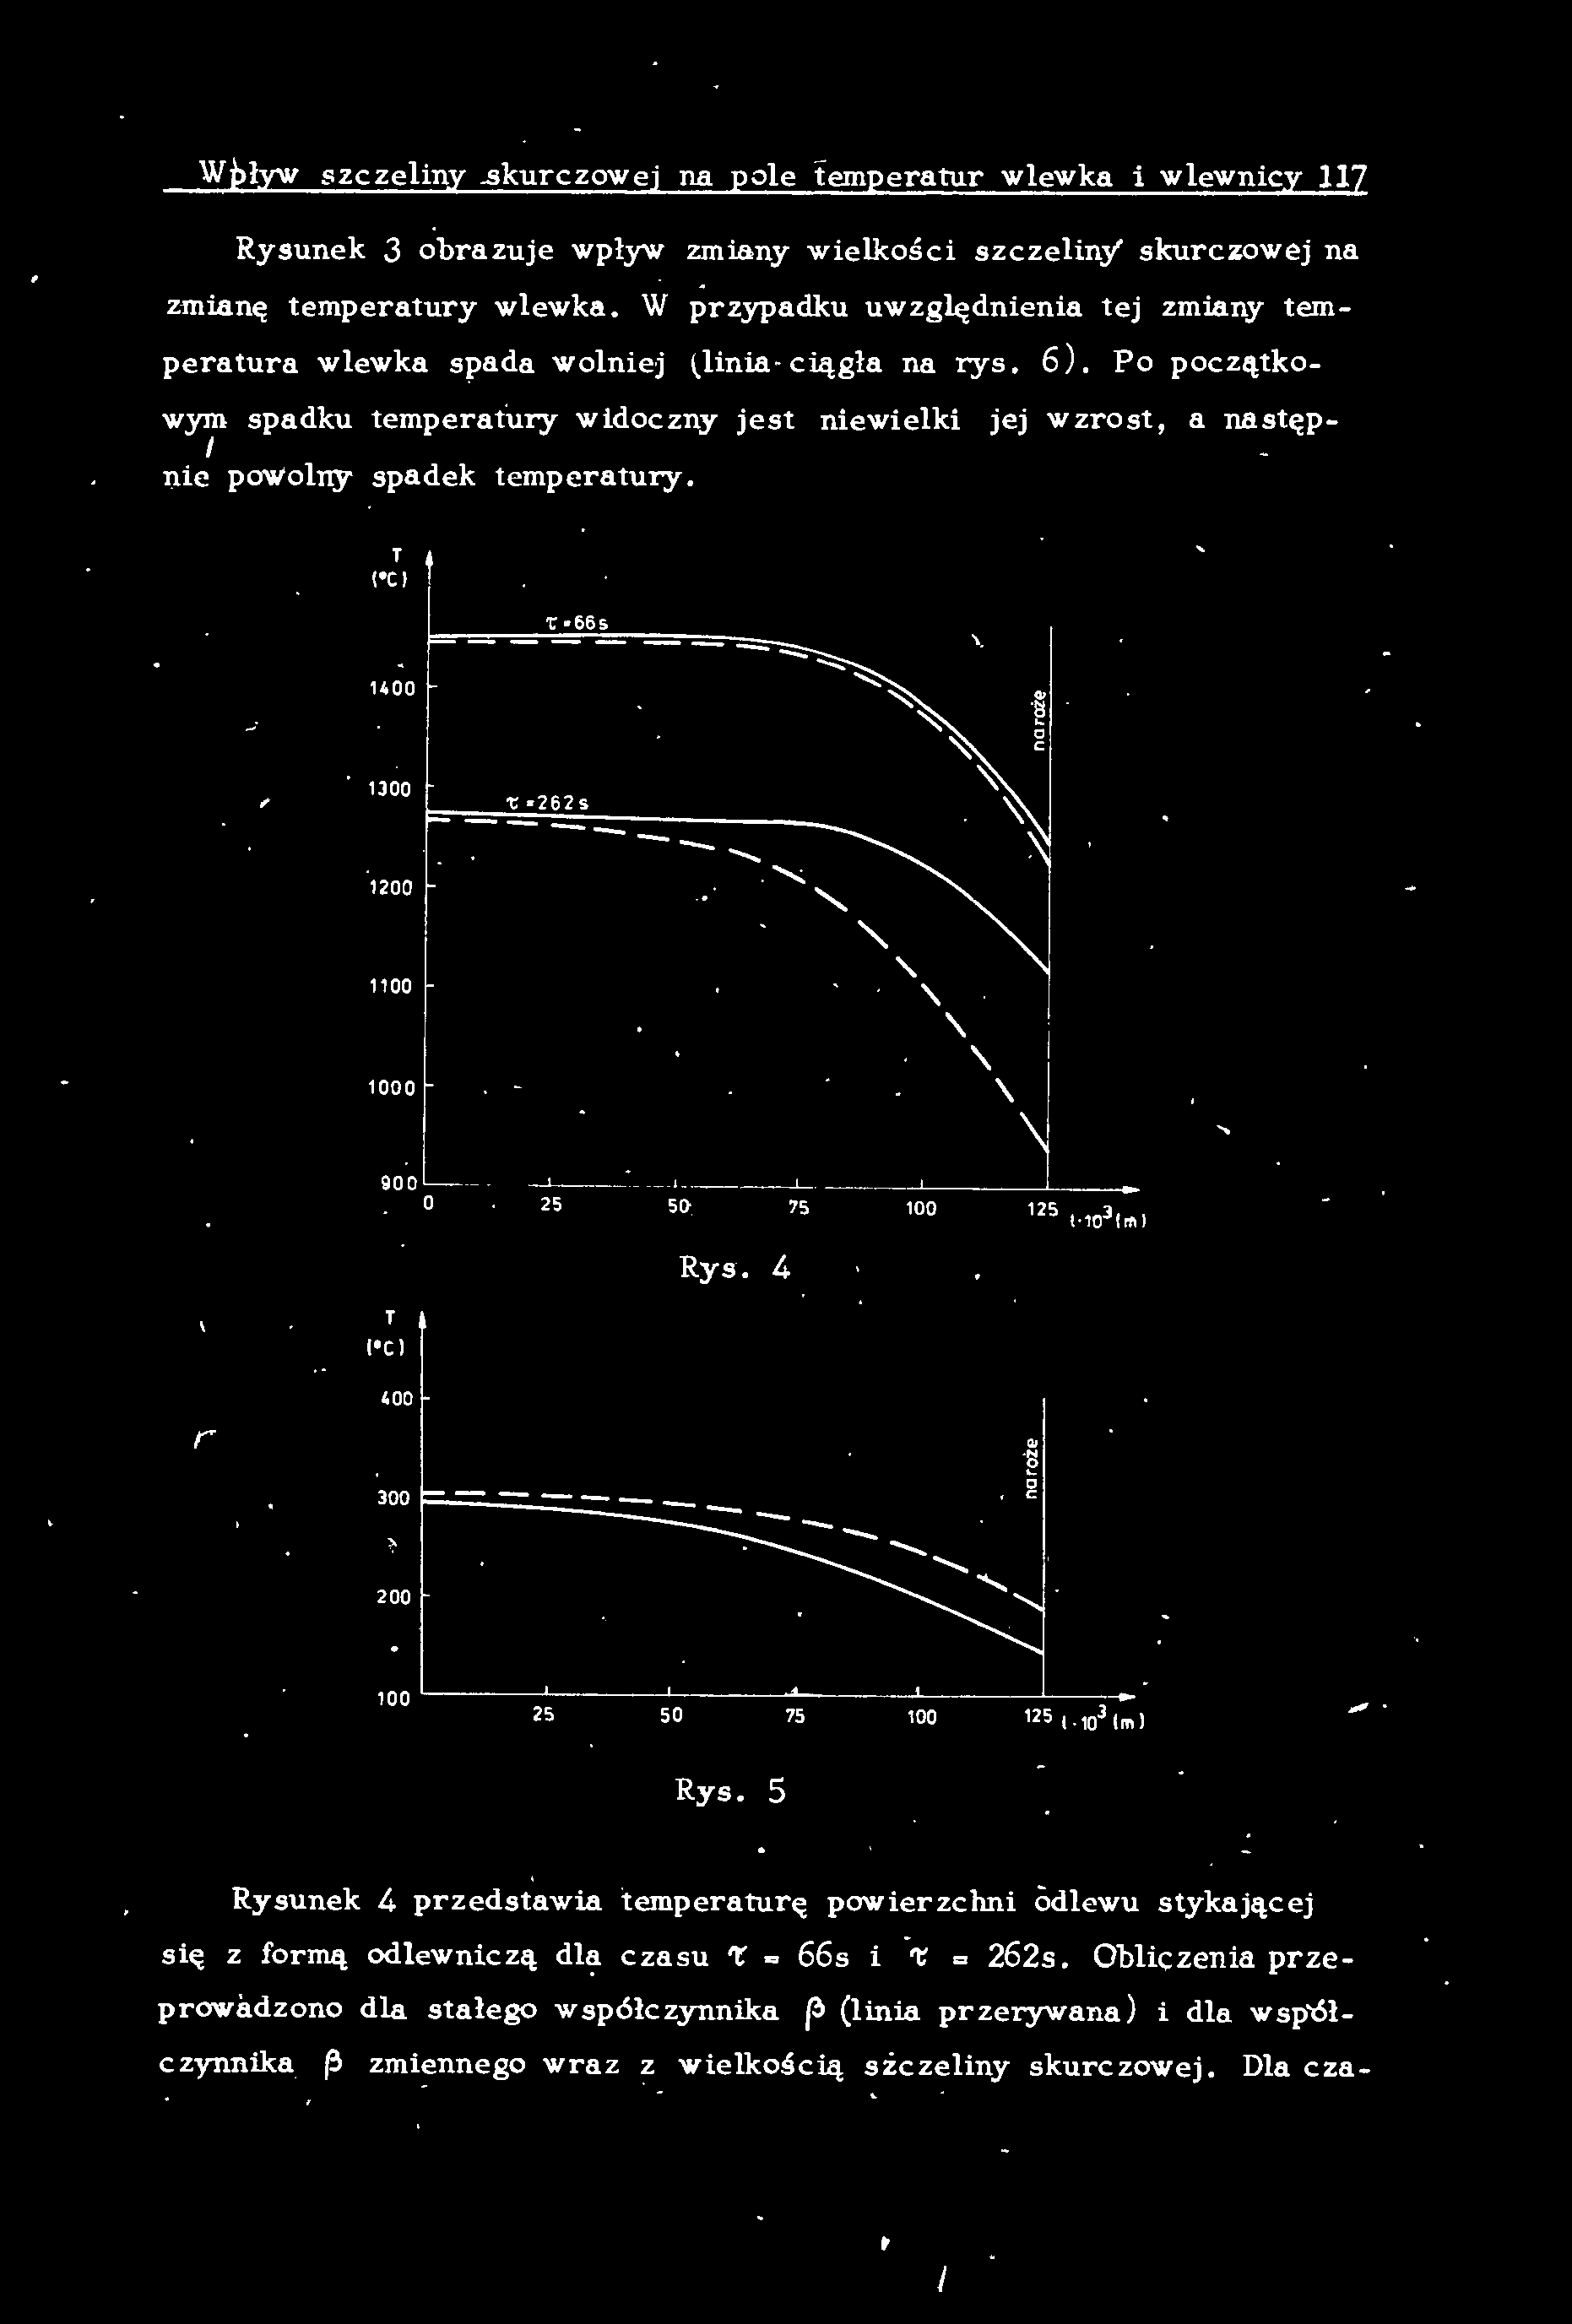 Wpływ szczeiny.skurczowej na poe temperatur wewka i wewnicy 117 Rysunek 3 obrazuje wpływ zmiany wiekości szczeiny' skurczowej na zmianę t emperatury wewka.